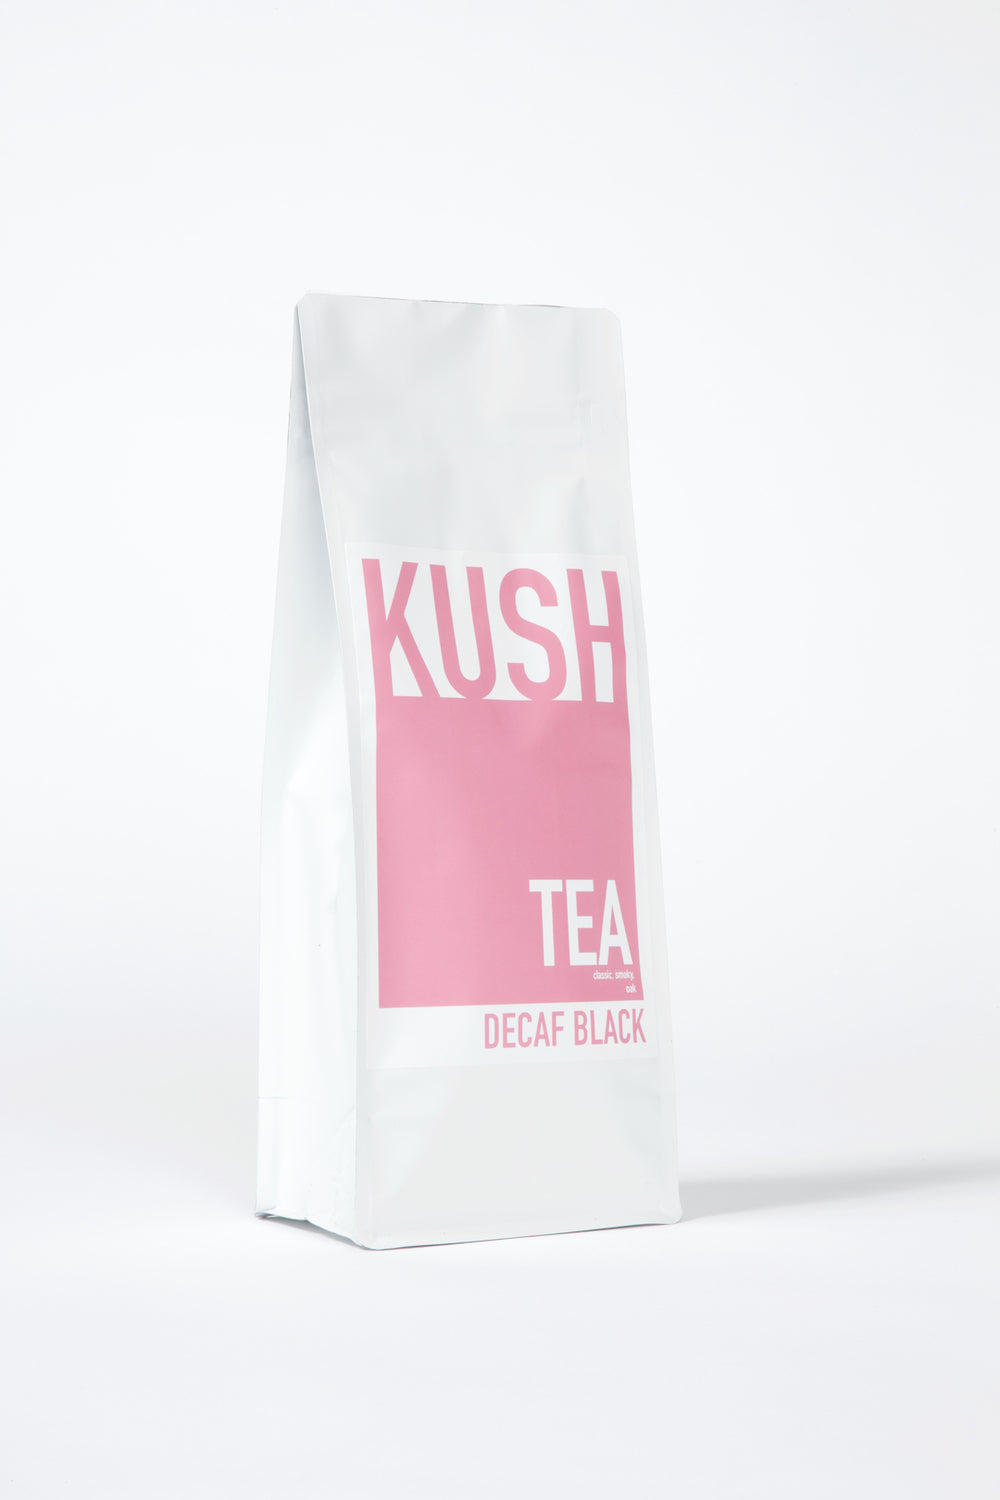 Decaf Black Loose Leaf Tea